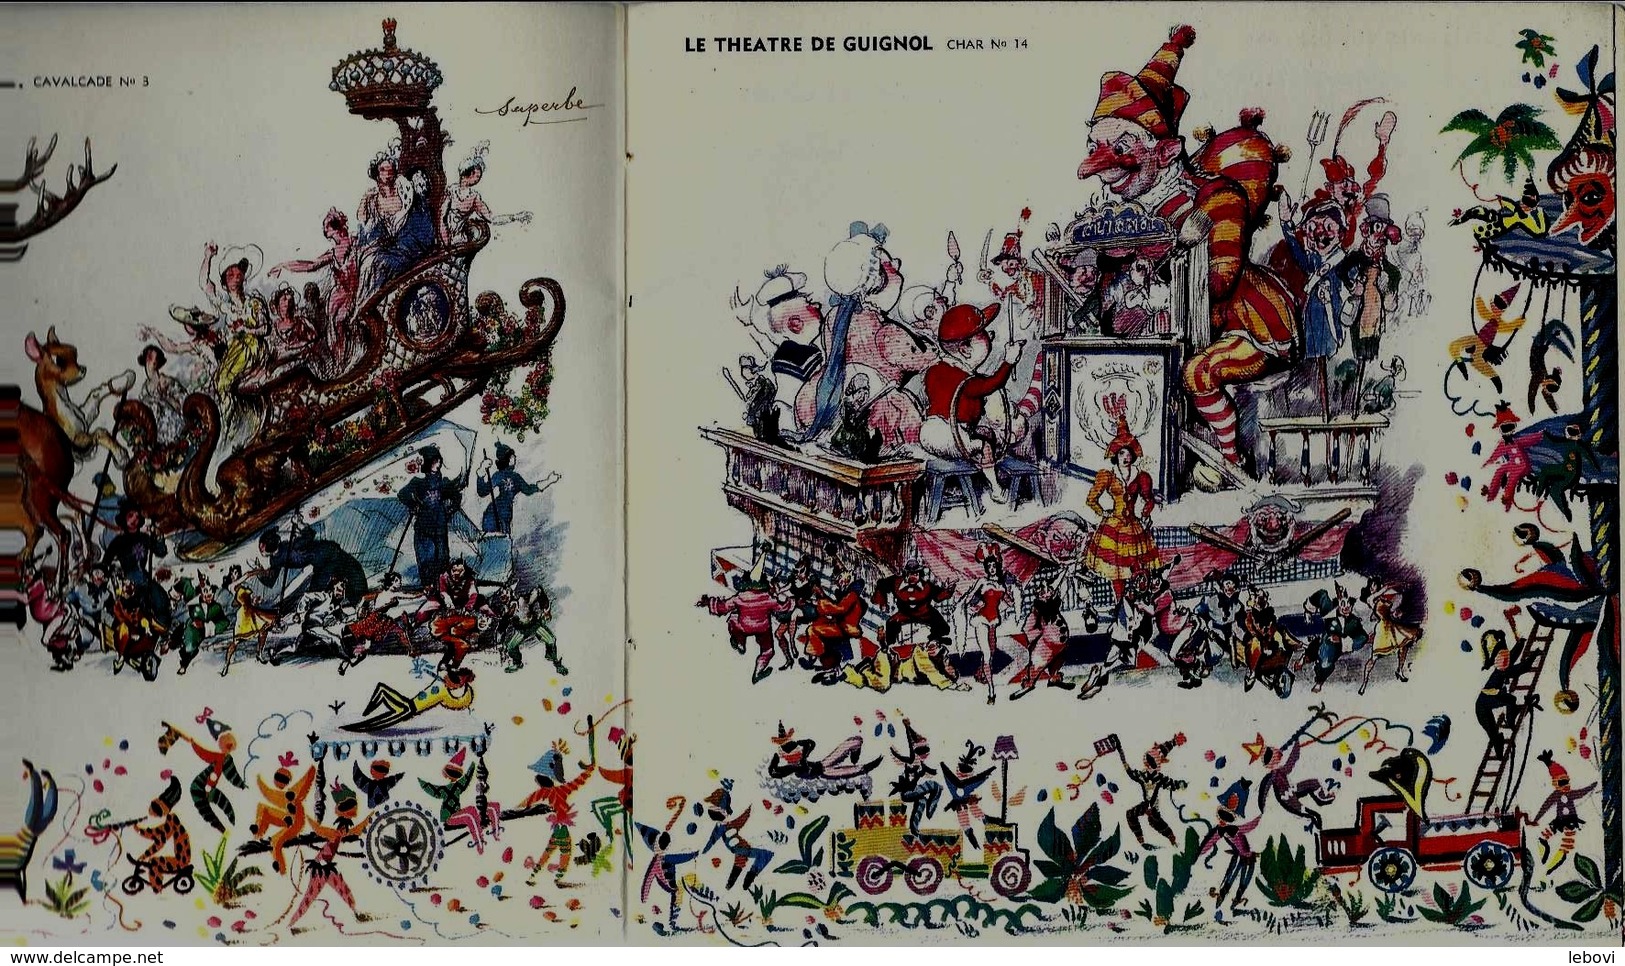 NICE Carnaval 1954  - Présentation Des Chars - Carnival